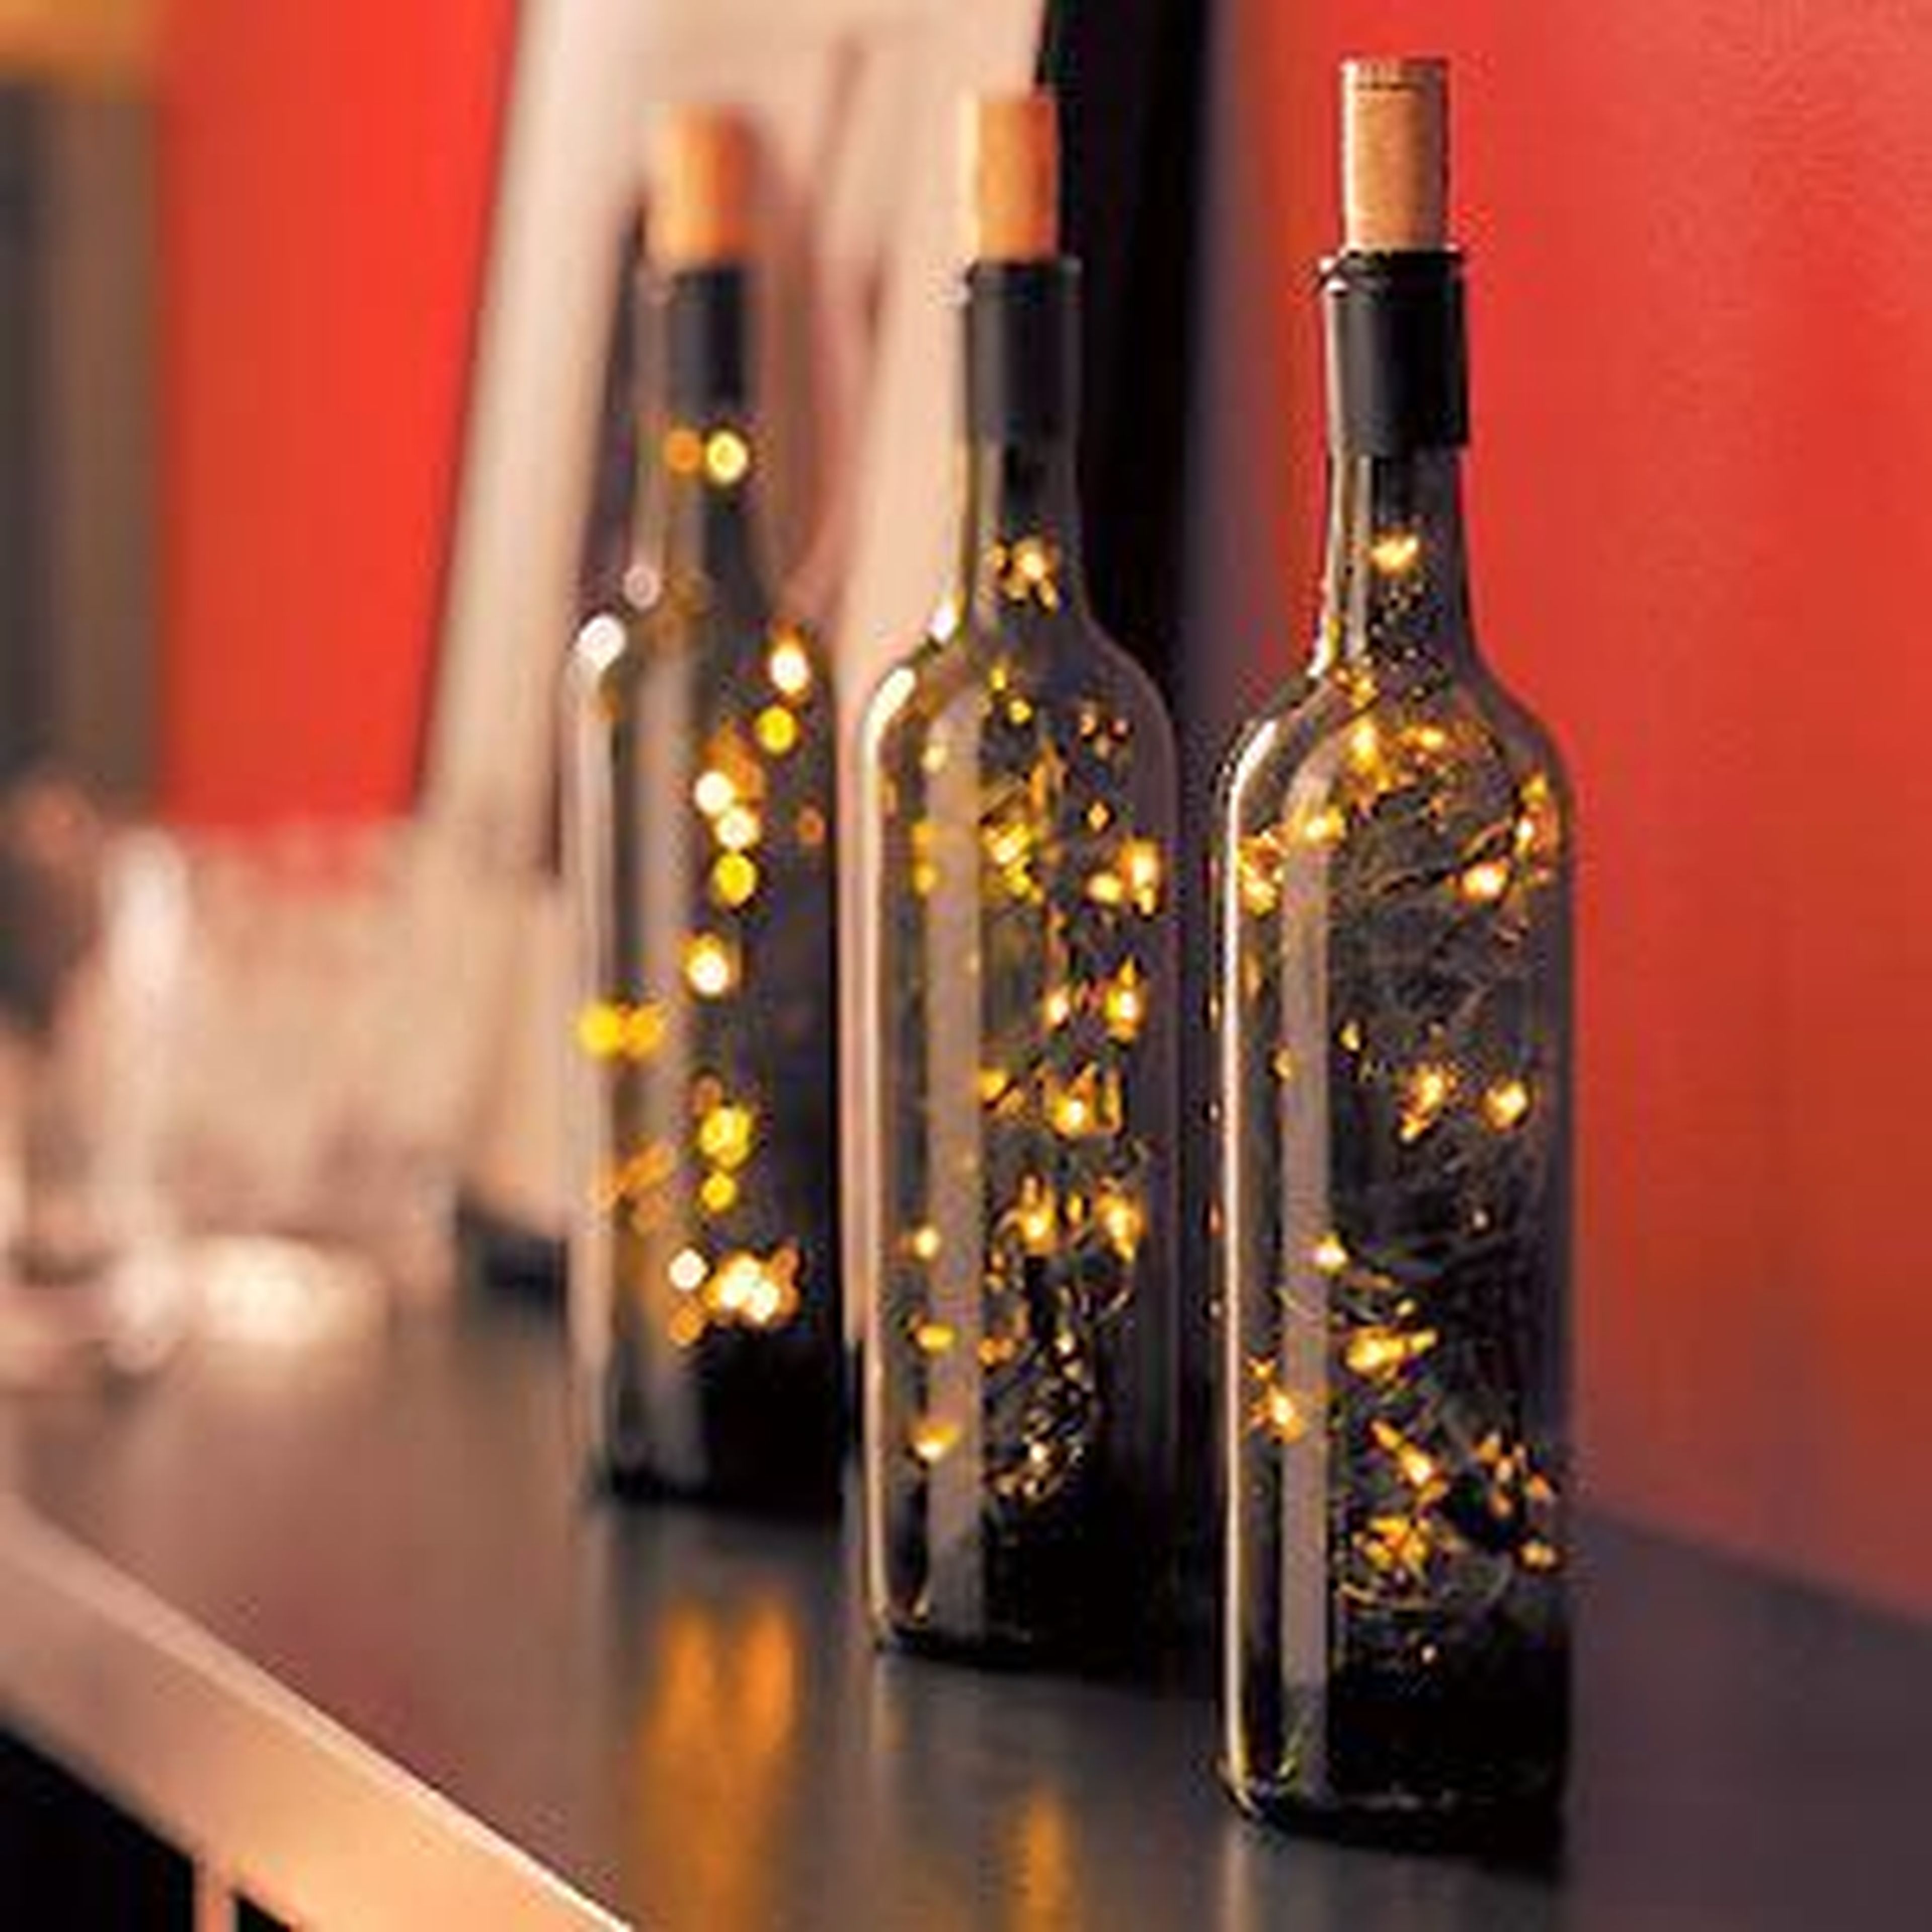 Botella de vino con luces